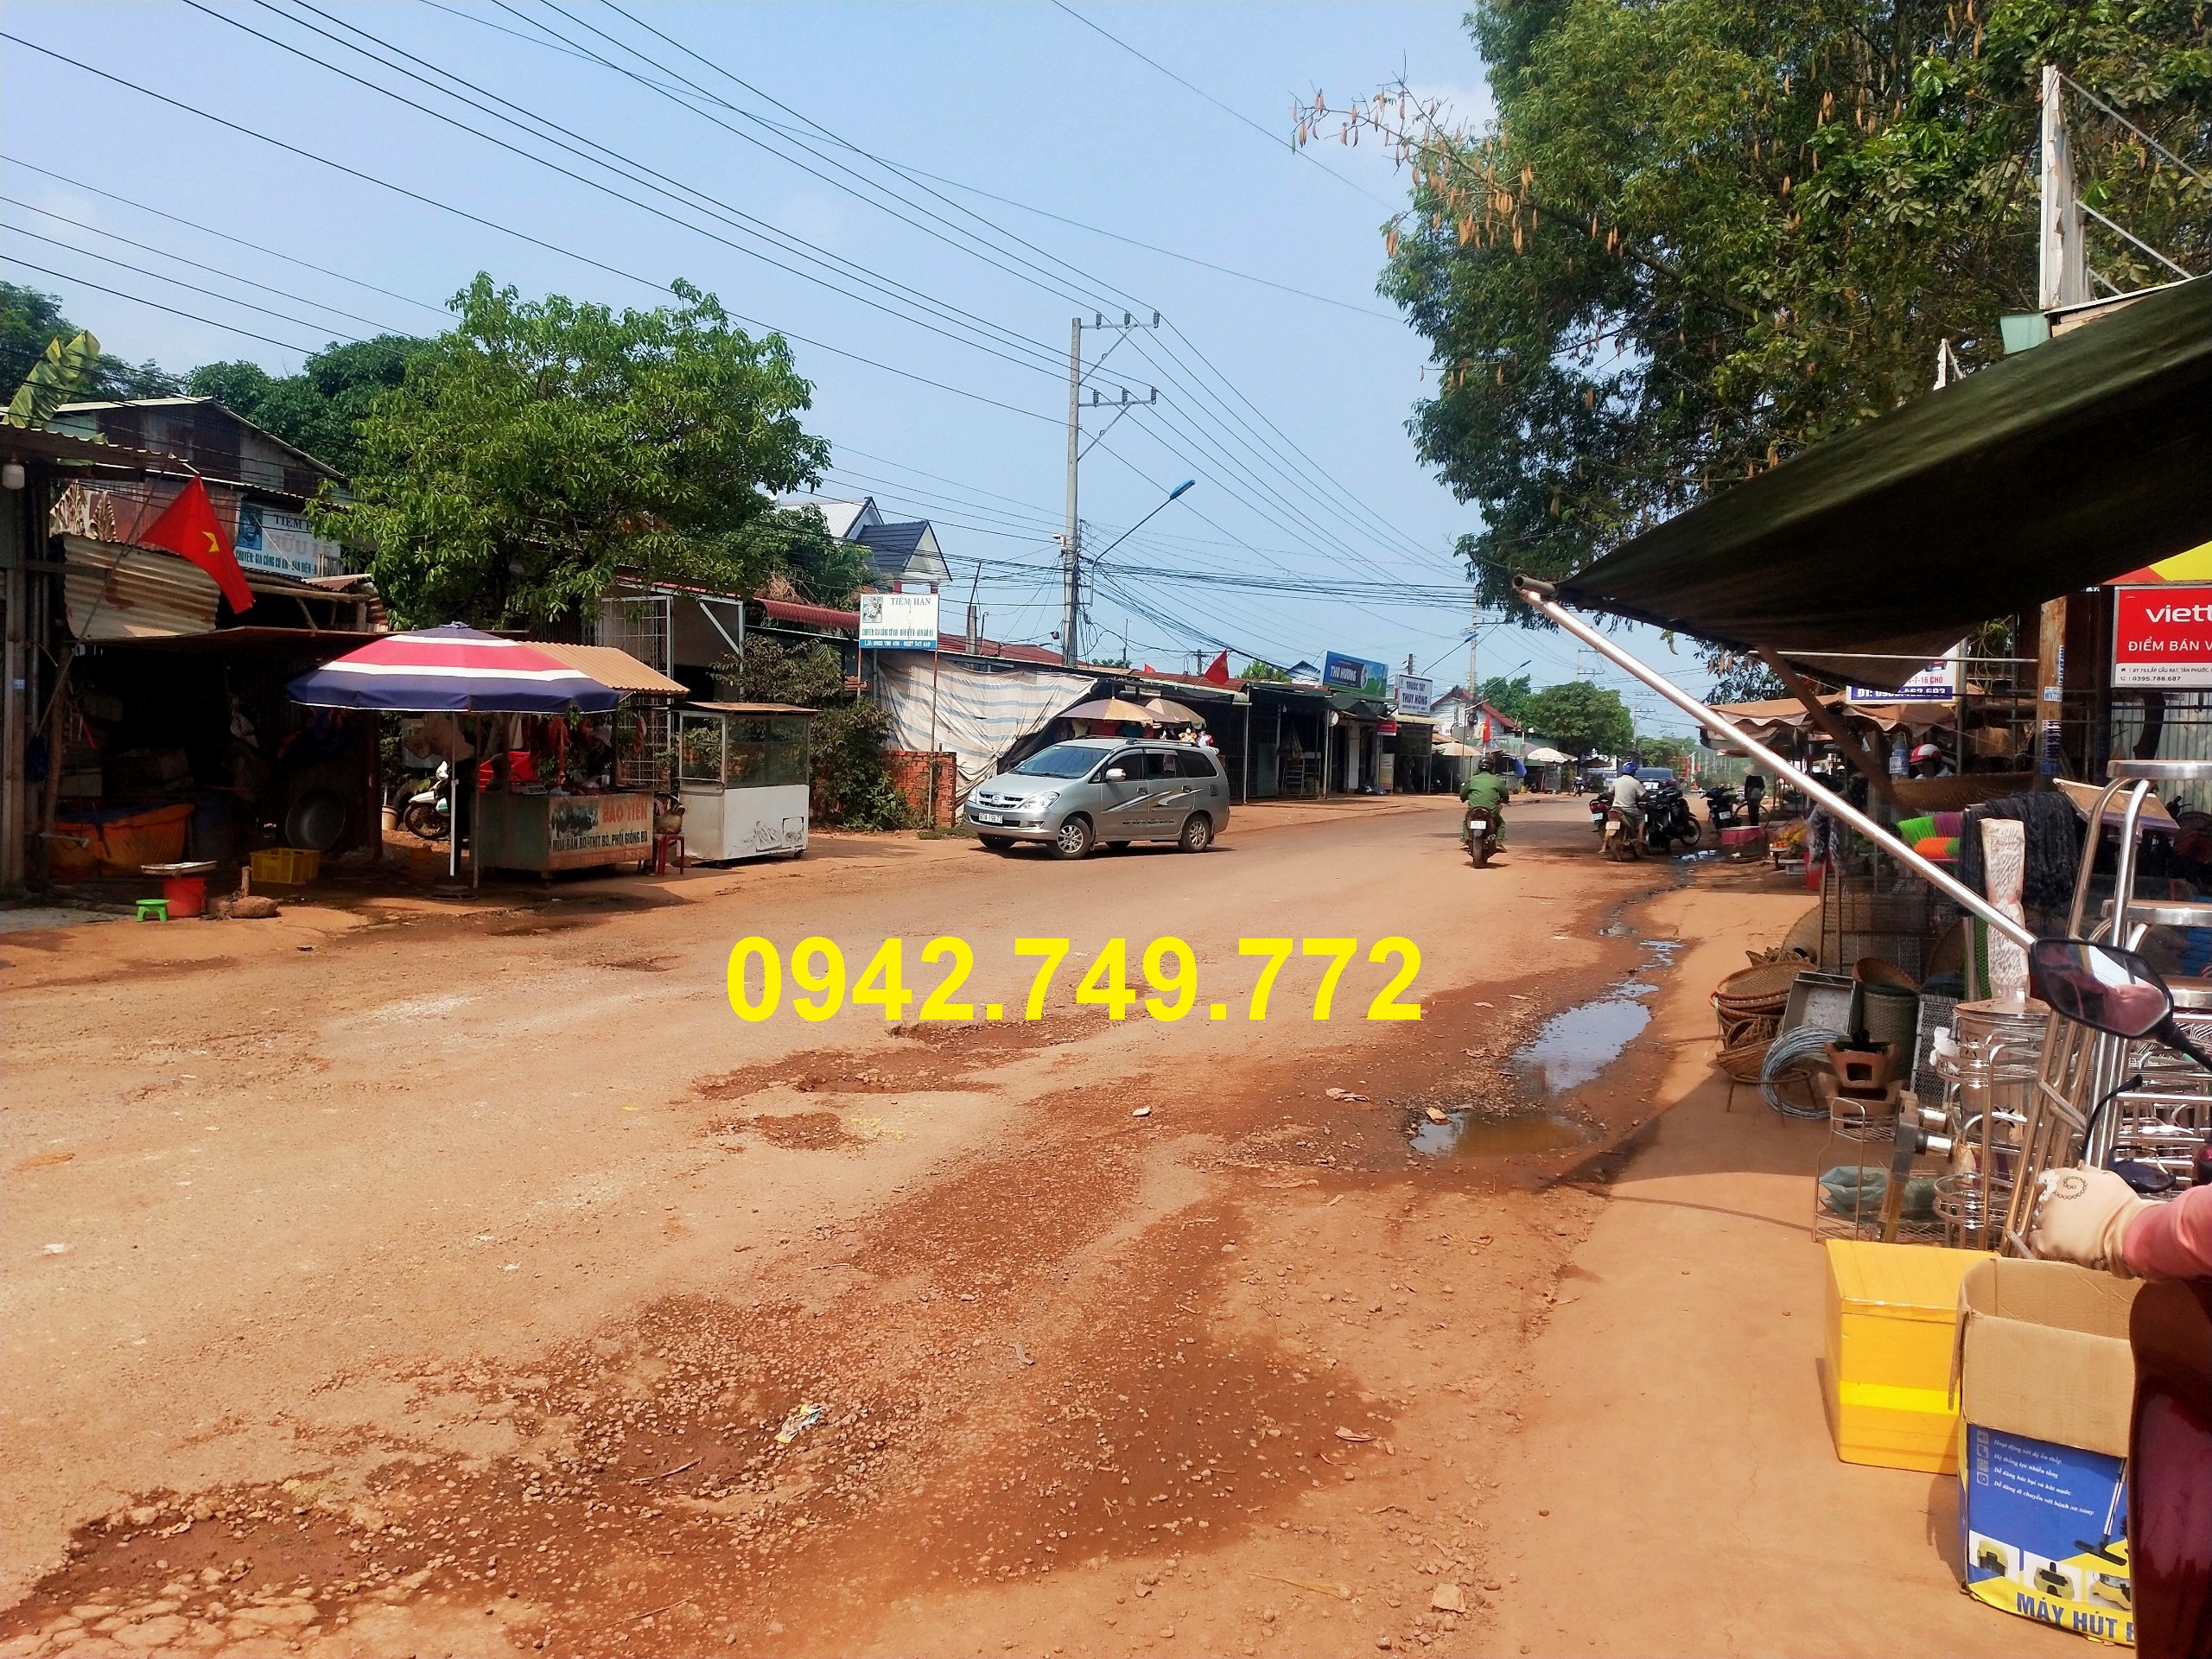 Cần bán Đất đường 753, Xã Tân Phước, Diện tích 205m², Giá 450.000.000 Triệu - LH: 0942749772 1